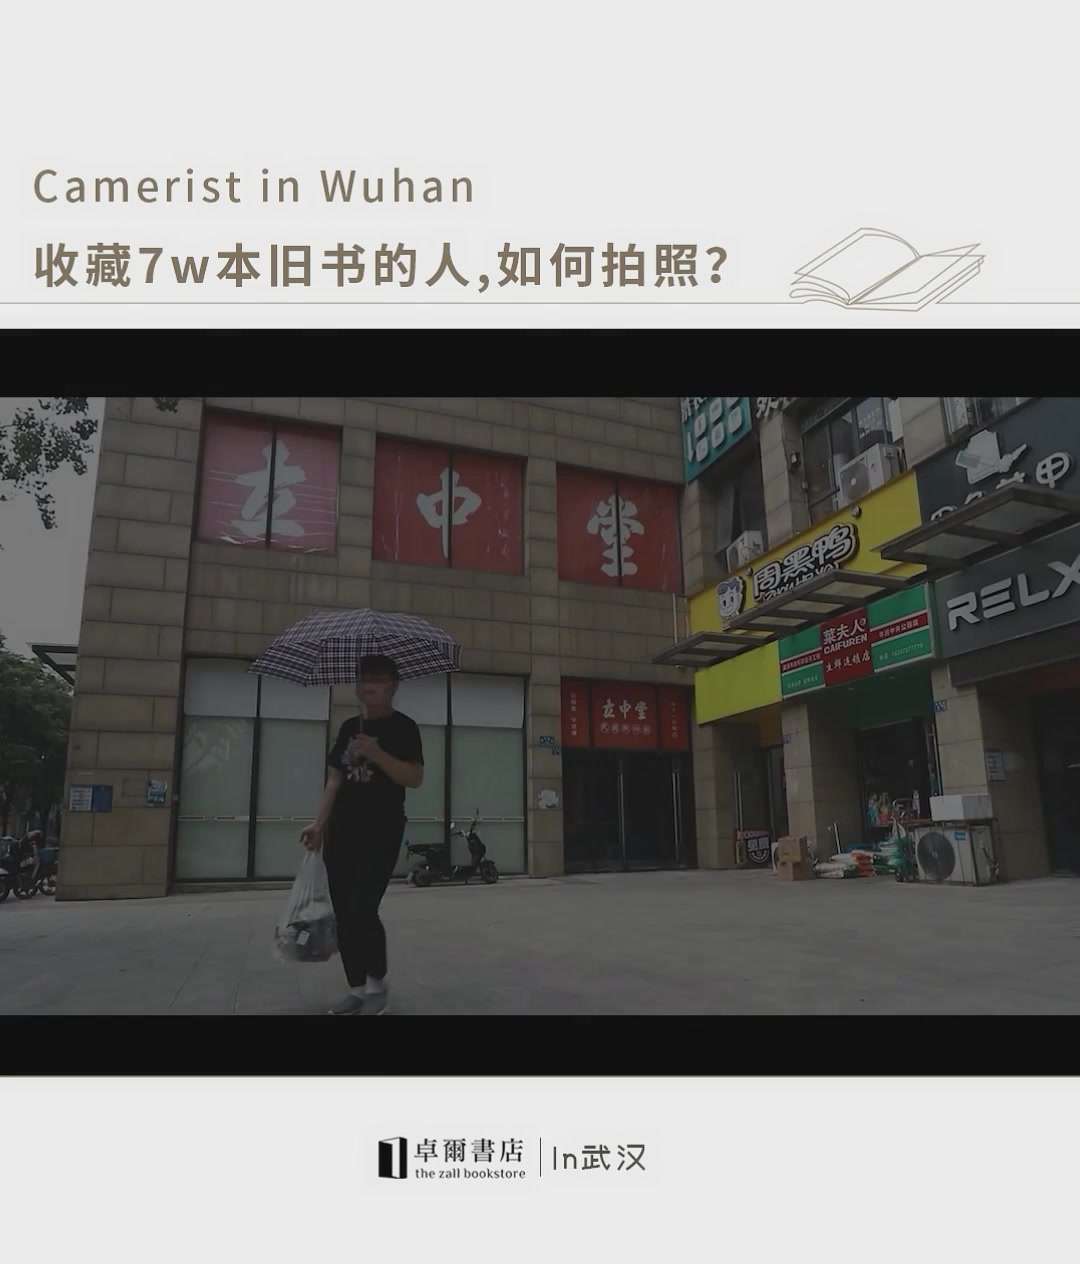 武汉人文生活纪录片丨收藏7w本旧书的人，如何拍照？——探访立中堂民国照相馆